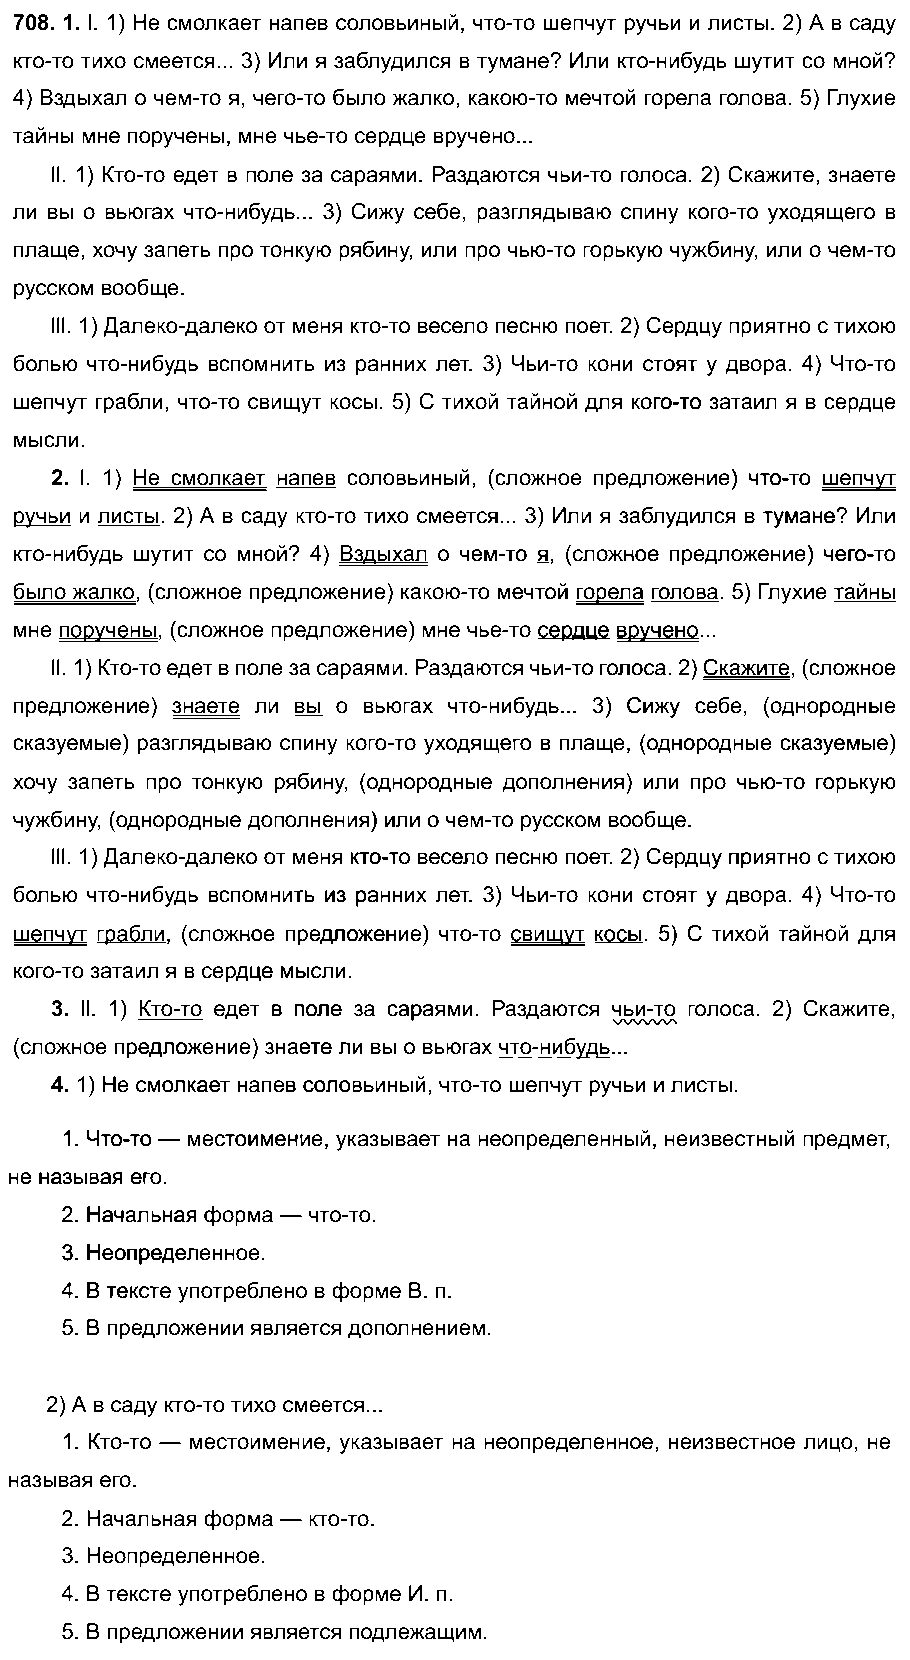 ГДЗ Русский язык 6 класс - 708